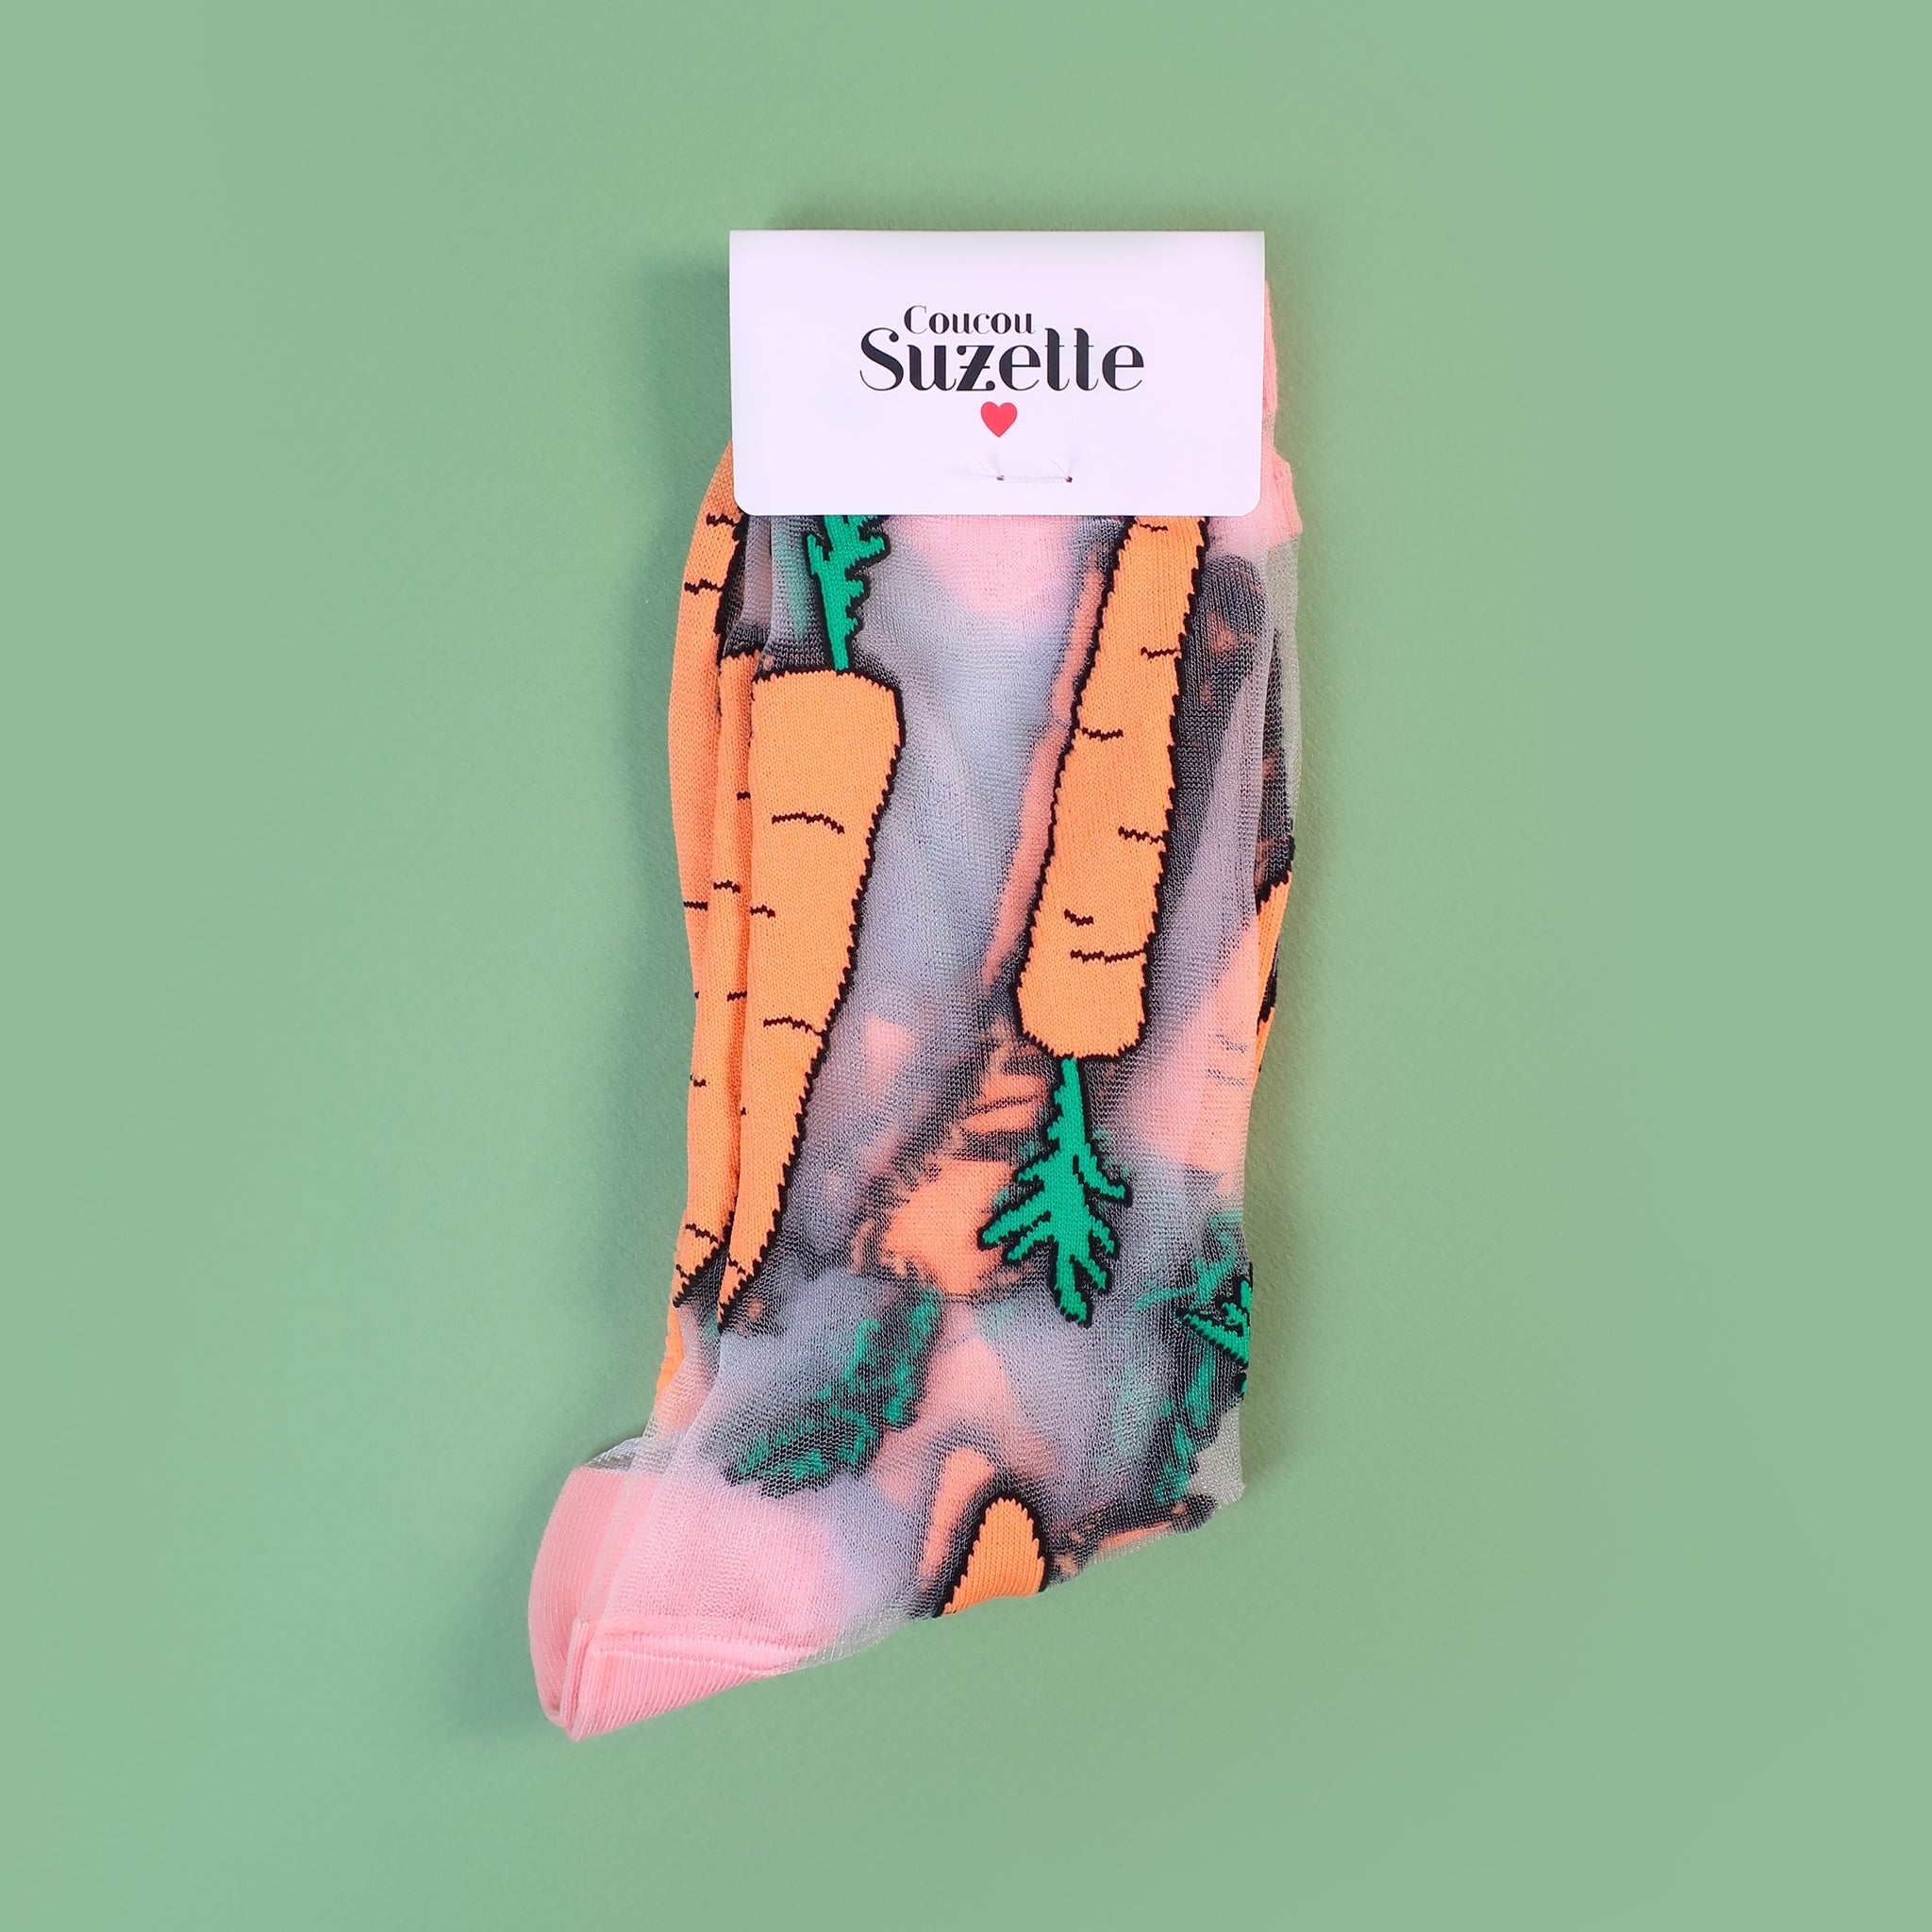 Coucou Suzette - Sheer Carrot Socks